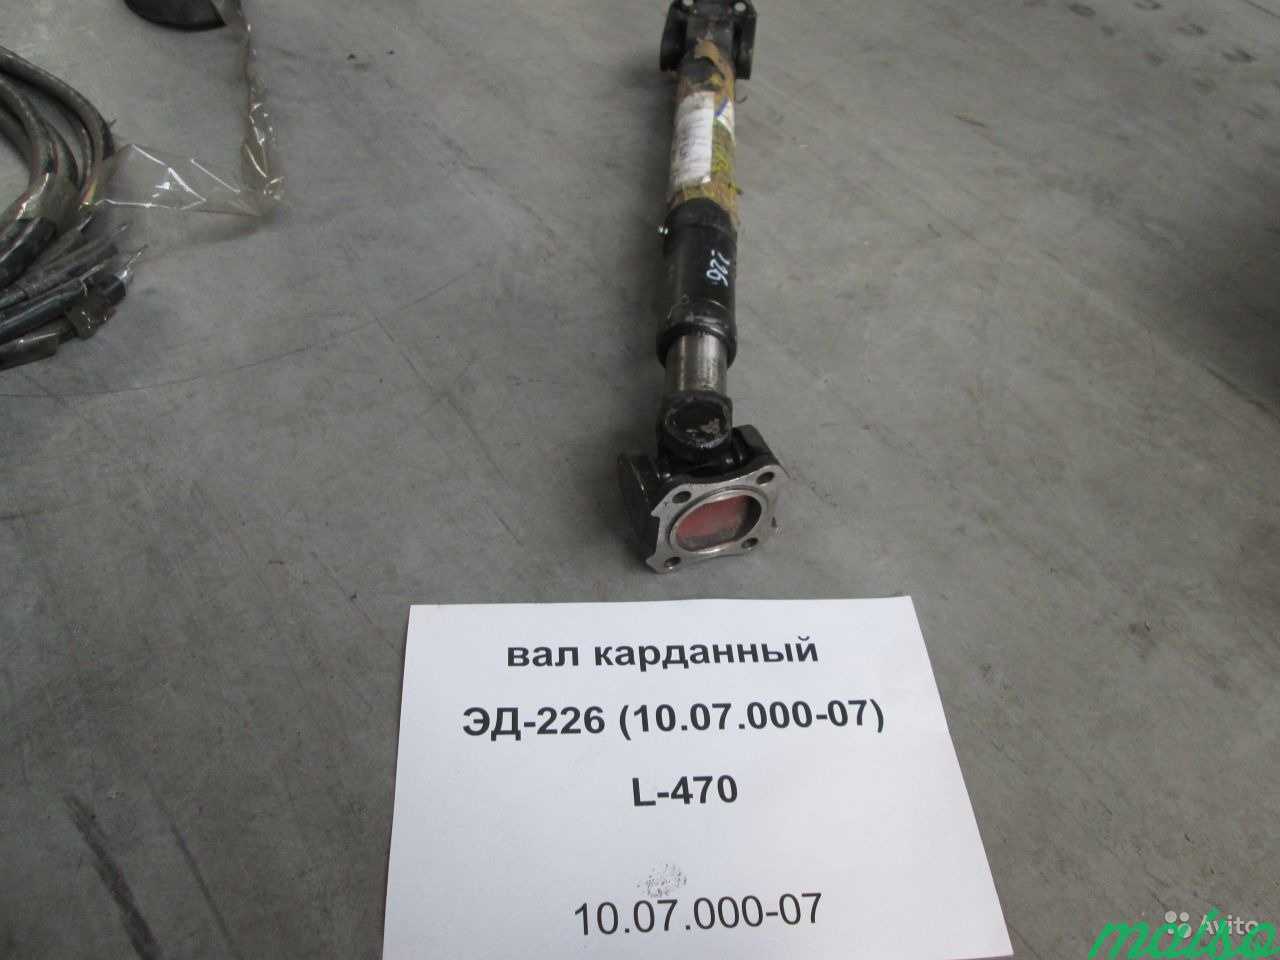 Вал карданный эд-226 (10.07.000-07) L-470 в Санкт-Петербурге. Фото 2